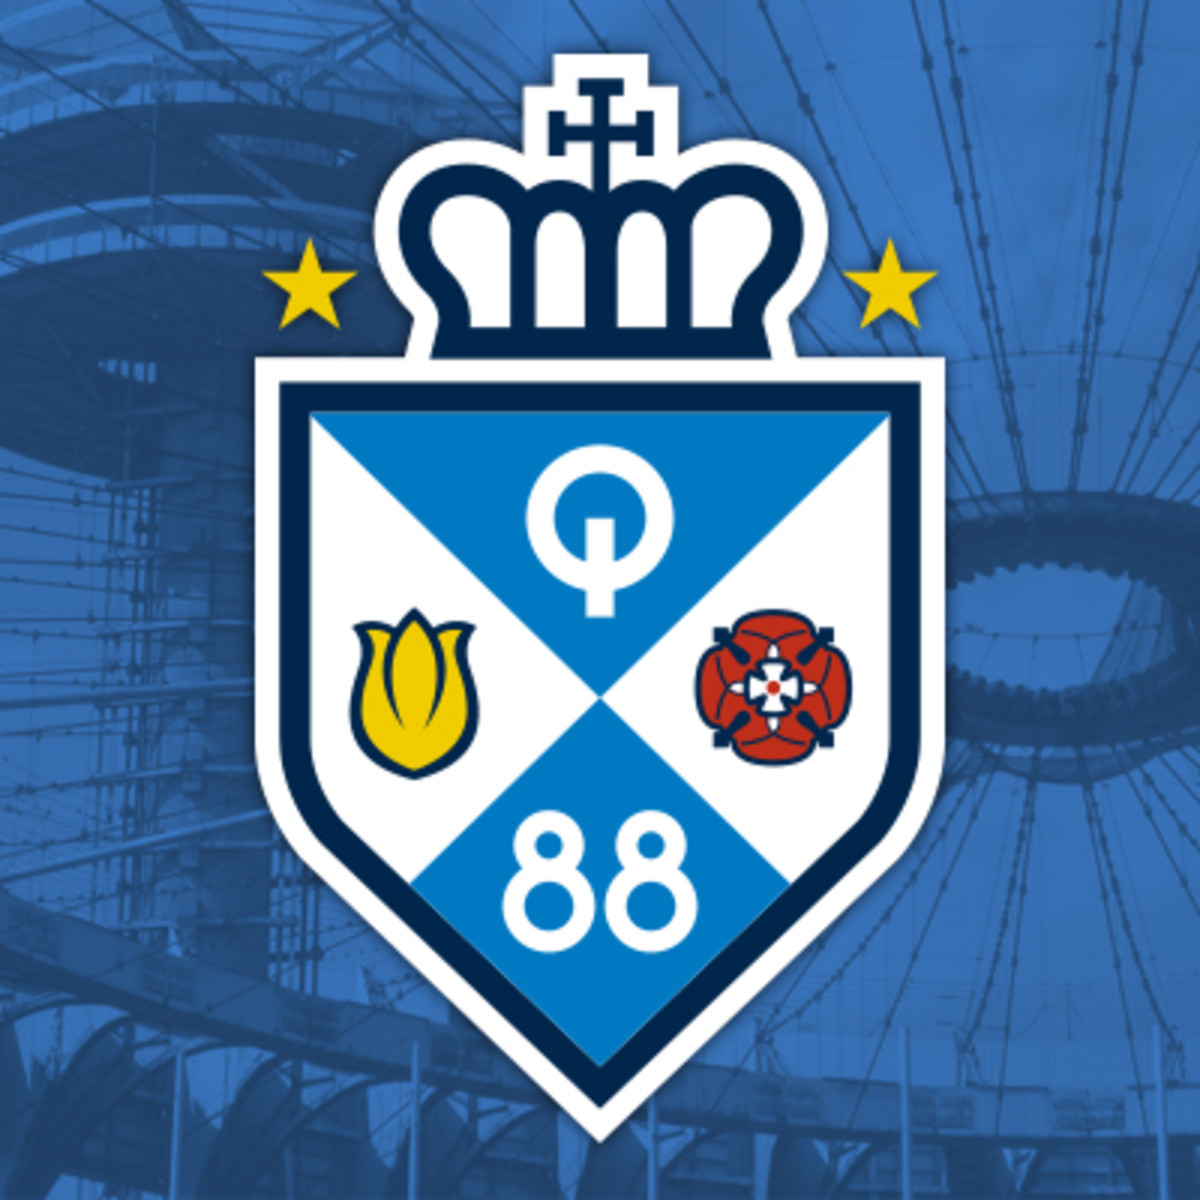 Soccer Team Logos